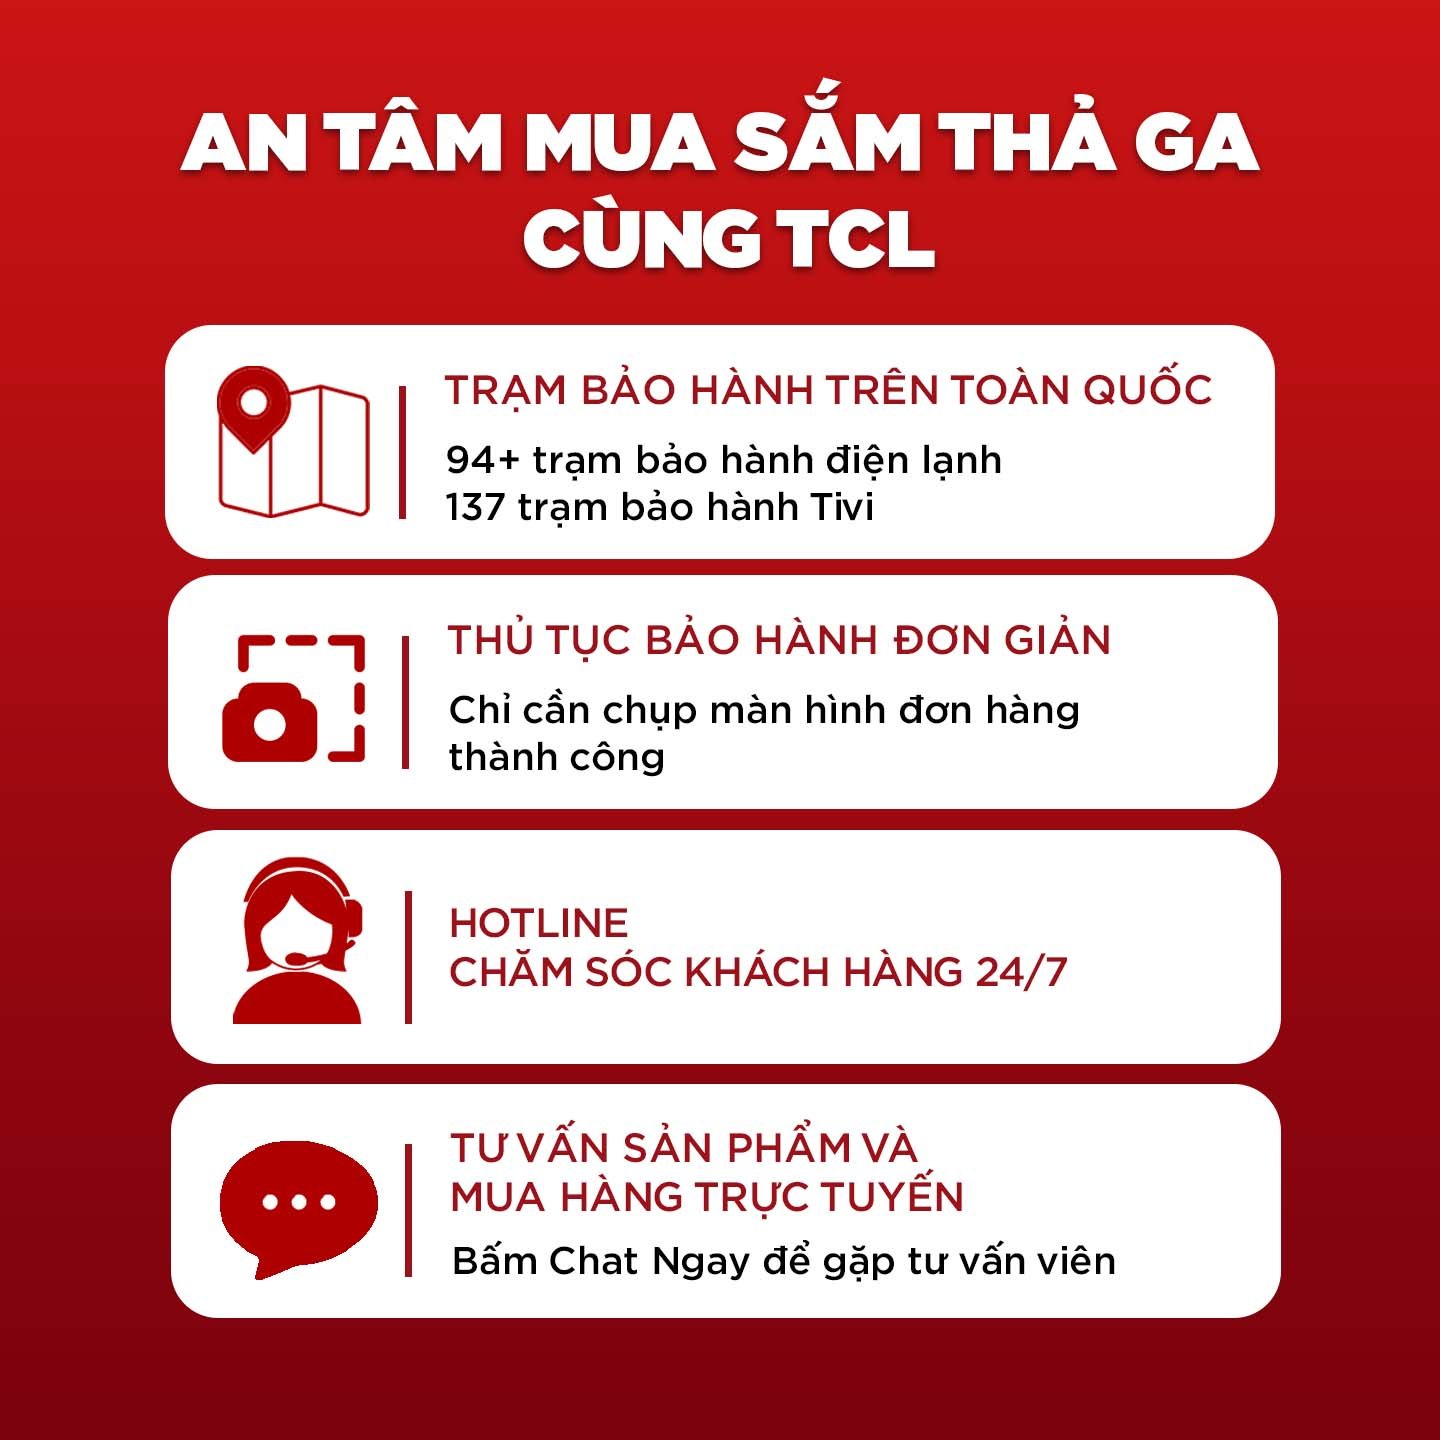 55'' 4K UHD Android Tivi TCL 55T65 - Gam Màu Rộng , HDR , Dolby Audio - Bảo Hành 3...